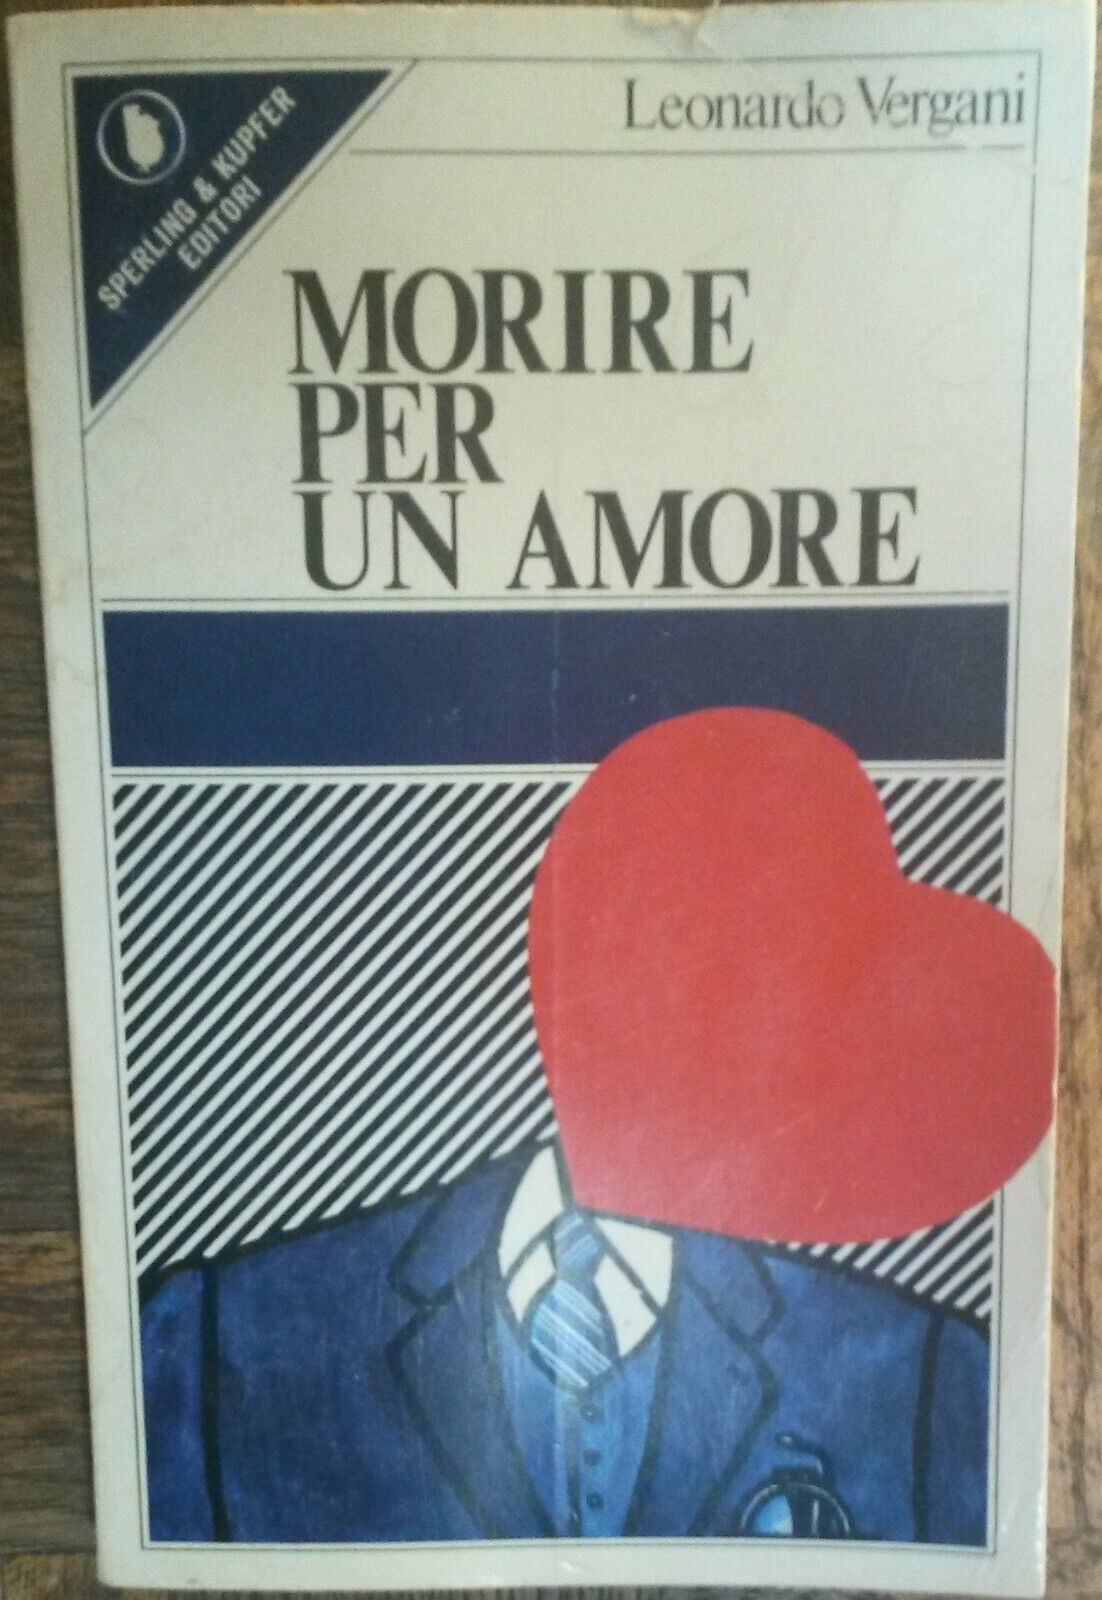 Morire per un amore - Leonardo Vergani - Sperling & Kupfer Editori,1979 - R